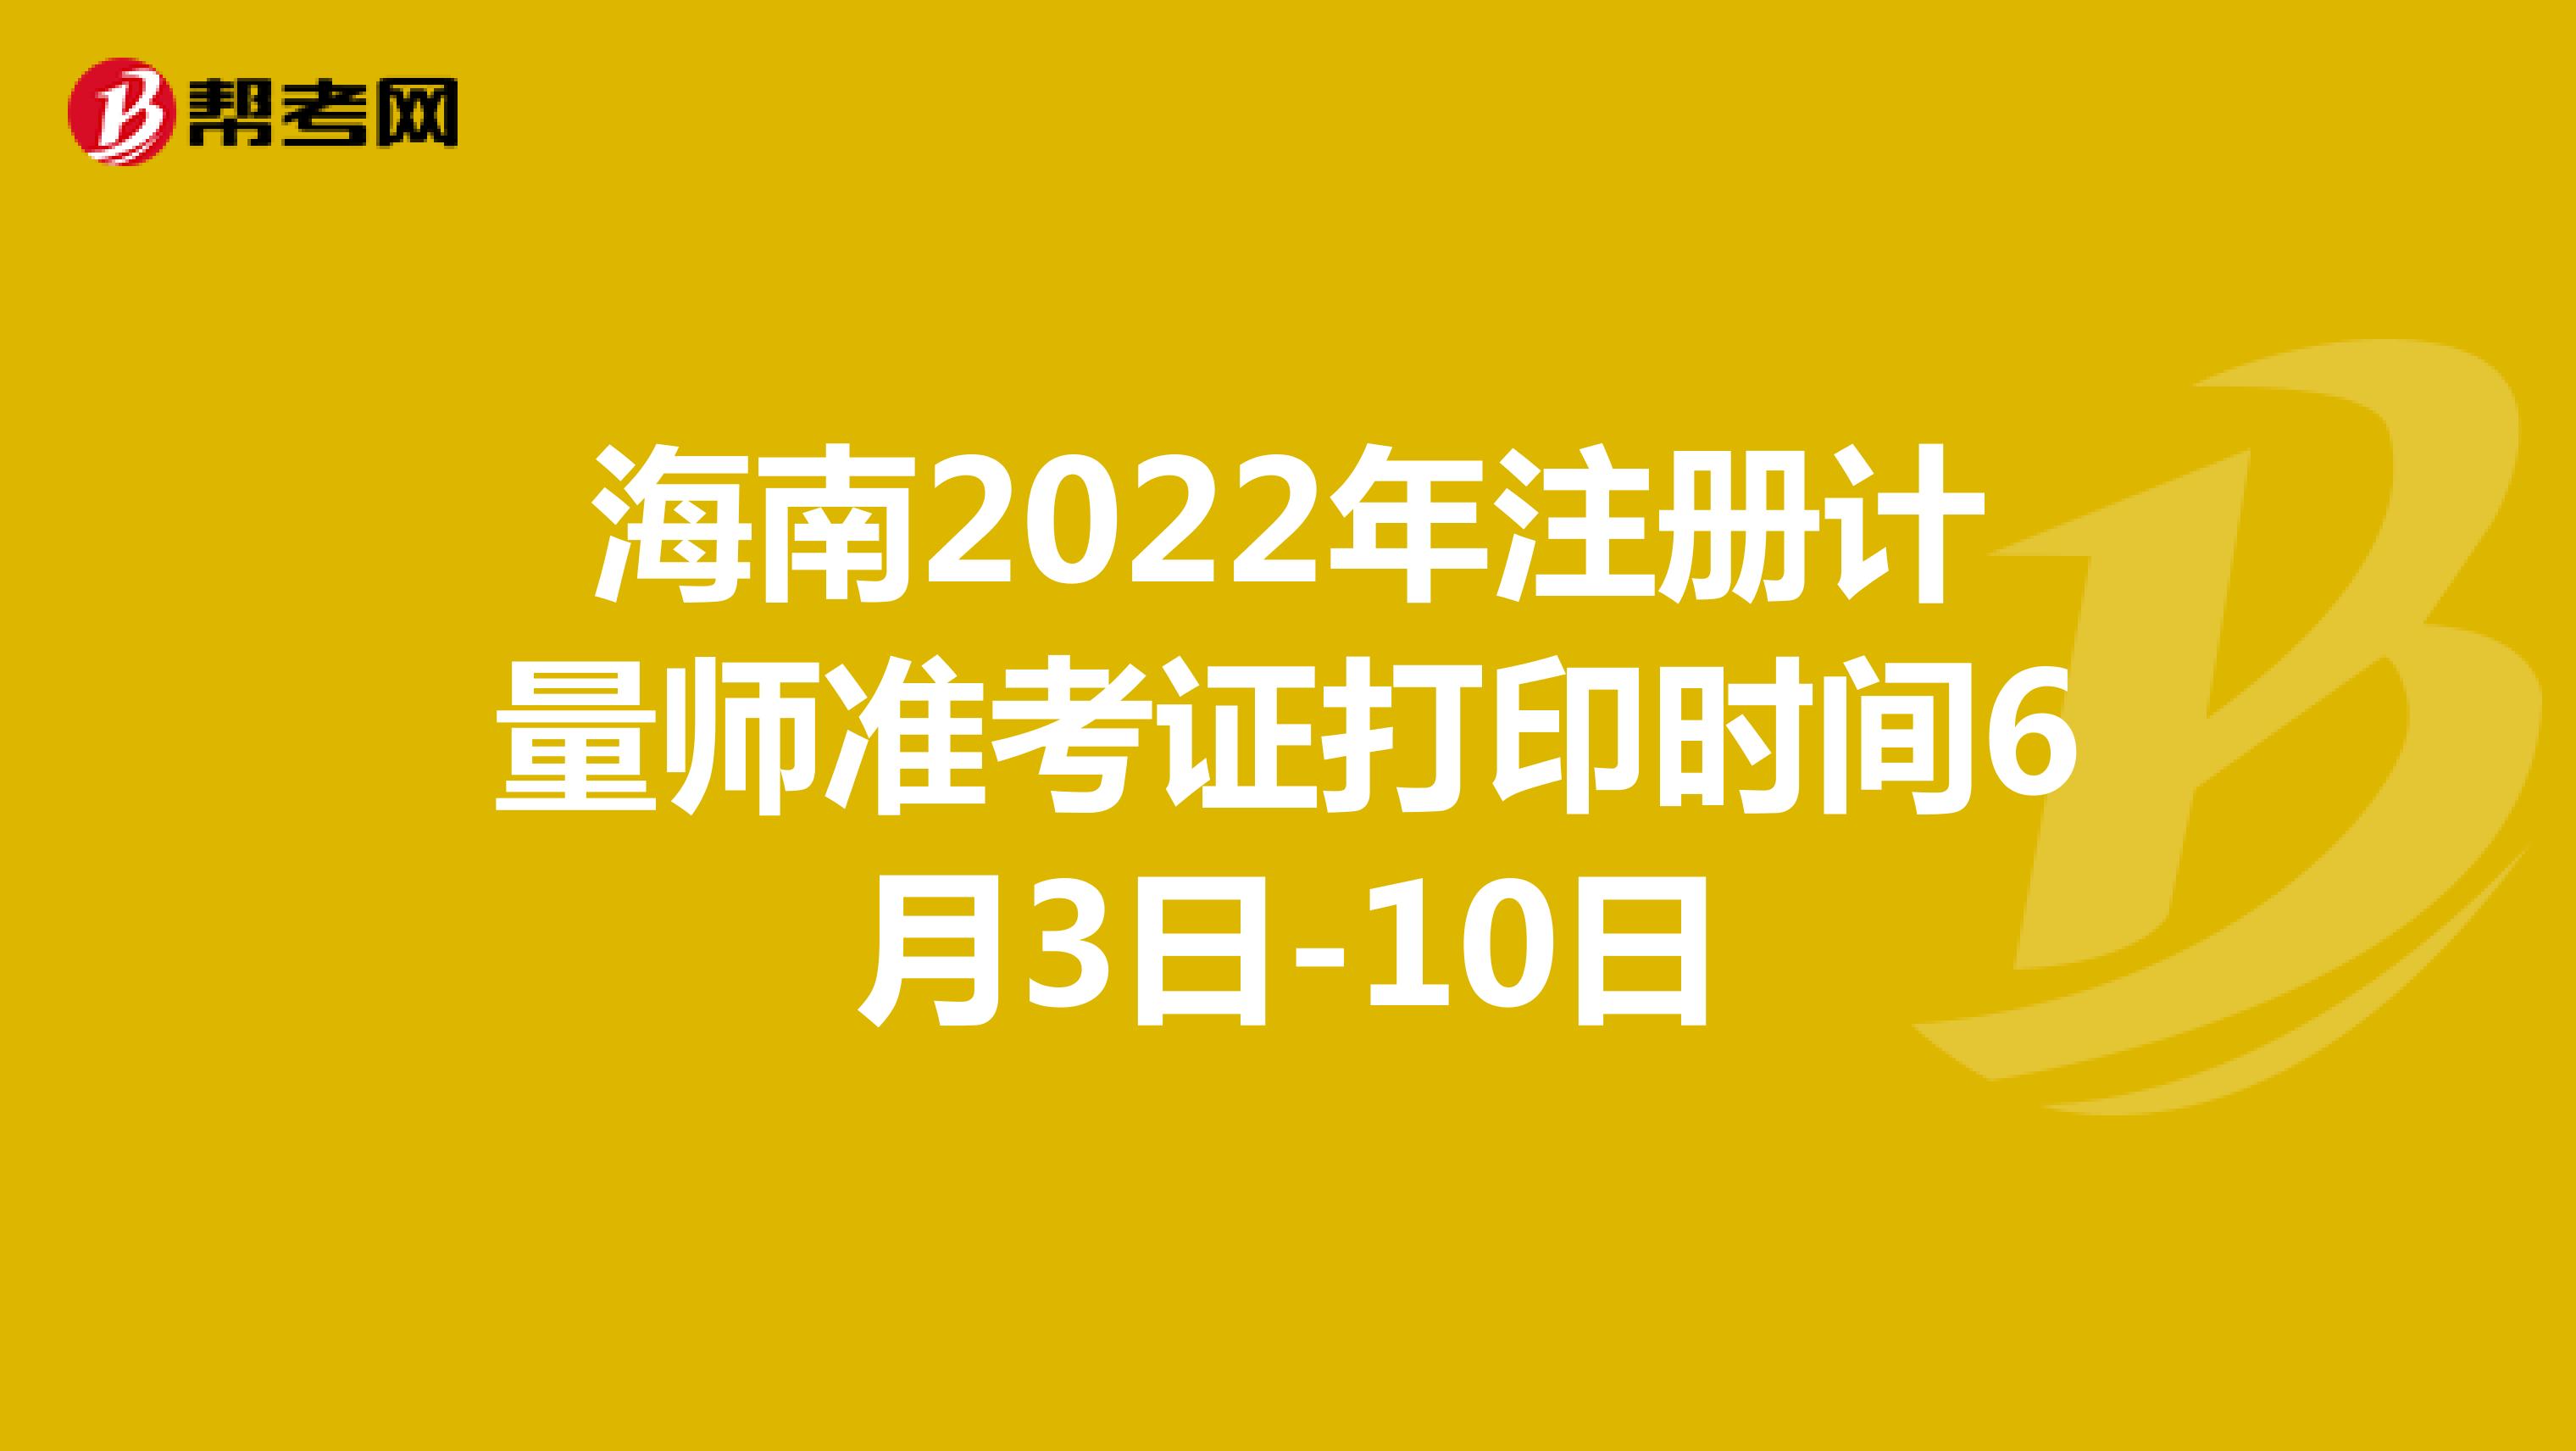 海南2022年注册计量师准考证打印时间6月3日-10日